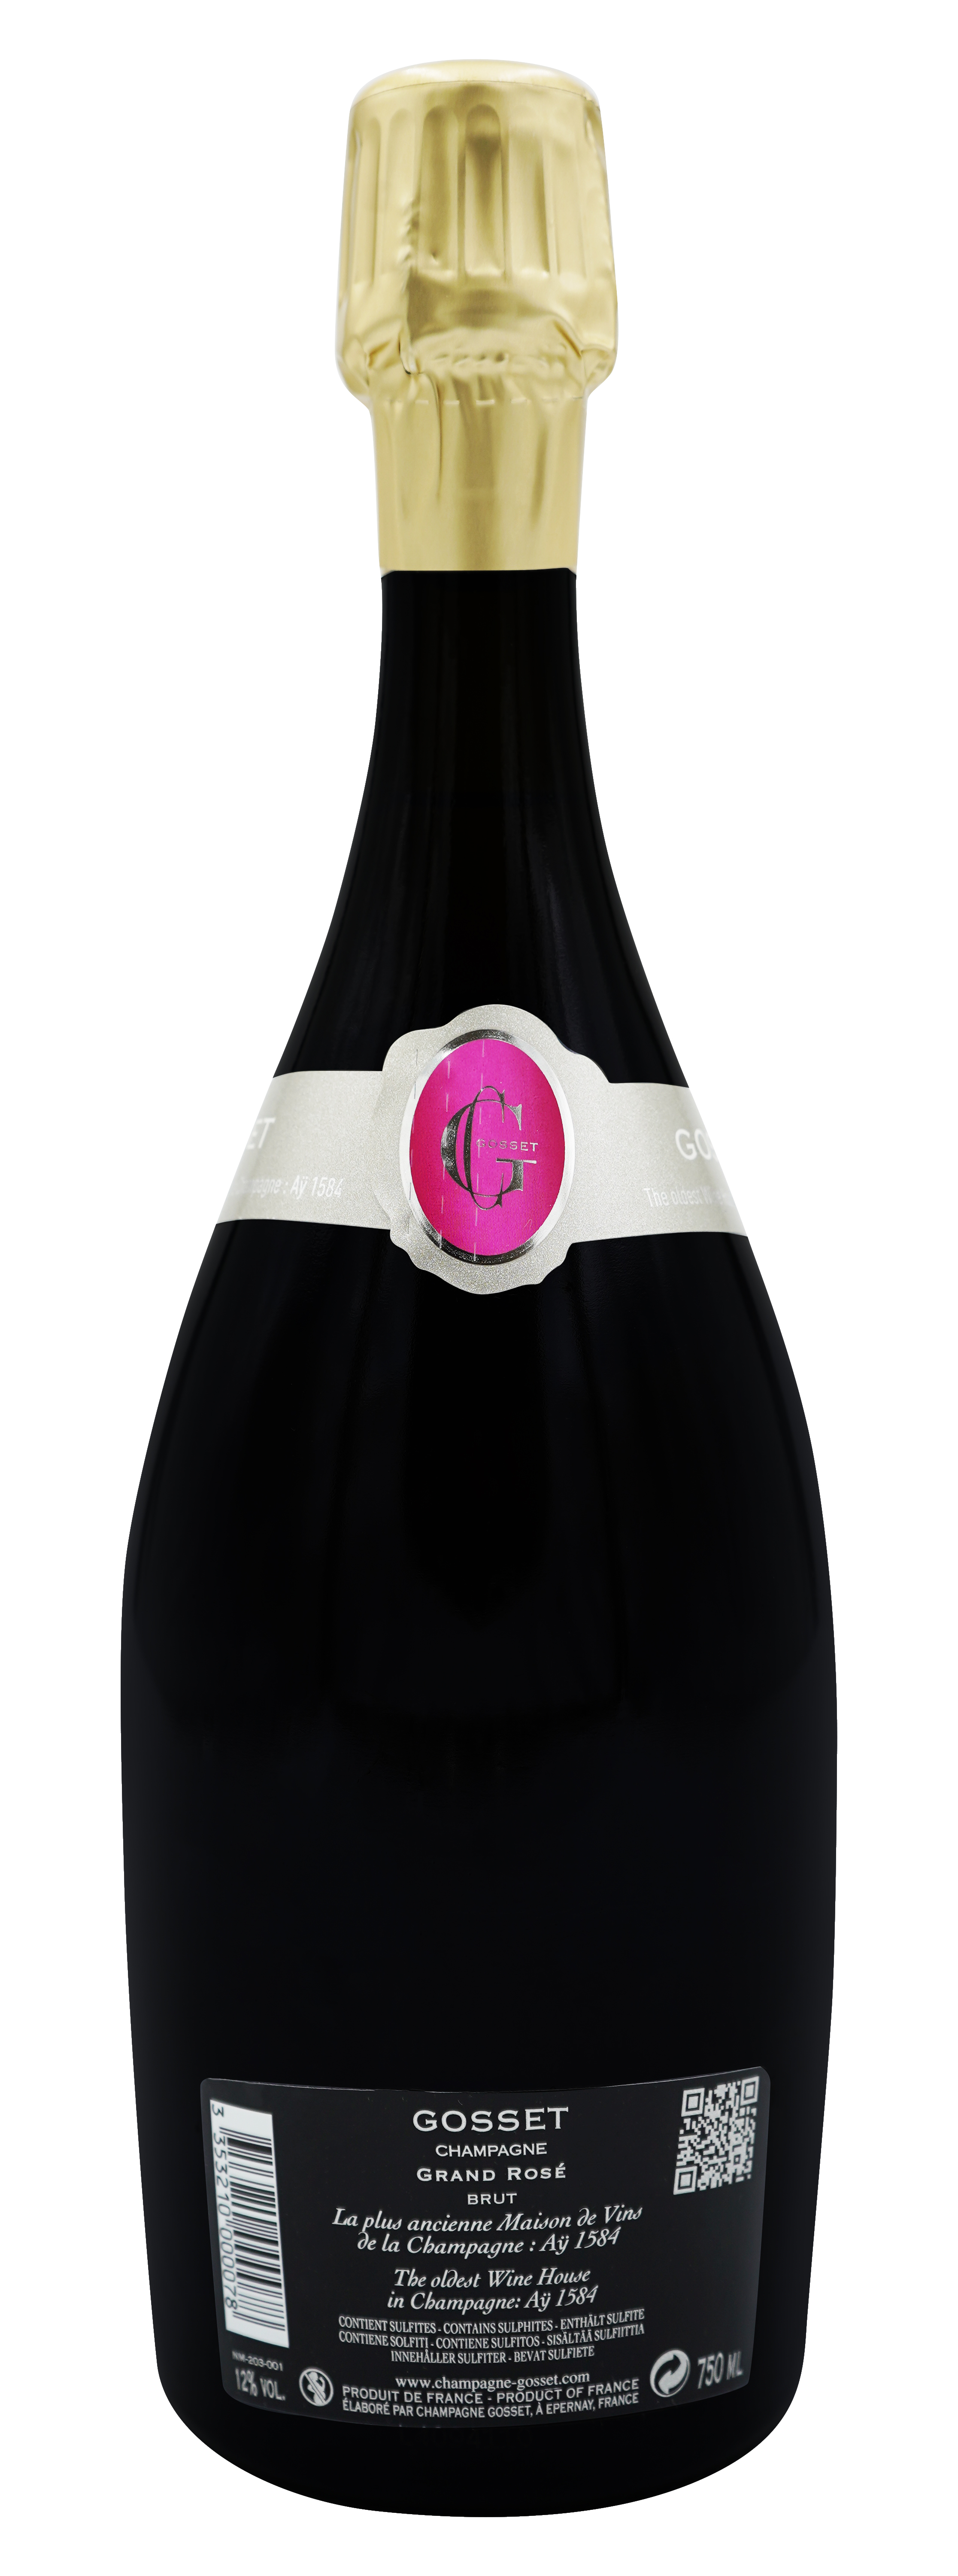 Gosset Champagner Grand Rose - back label